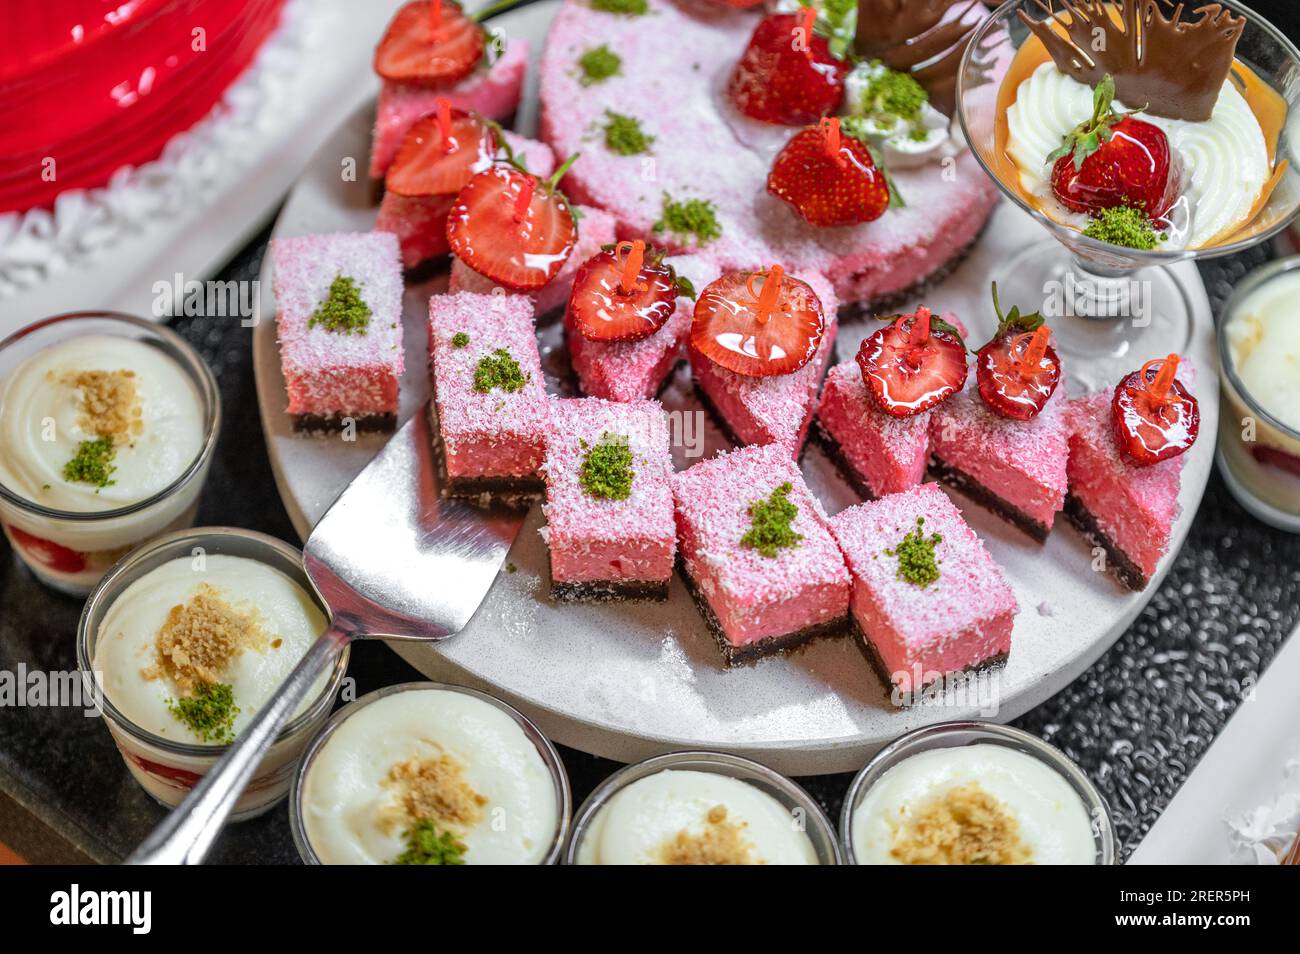 Süßes Gebäck am offenen Buffet in der Türkei. Viele verschiedene Kuchen im traditionellen türkischen Stil. All-Inclusive- und Übergewichtskonzept. Ausgewählter Fokus, Stockfoto